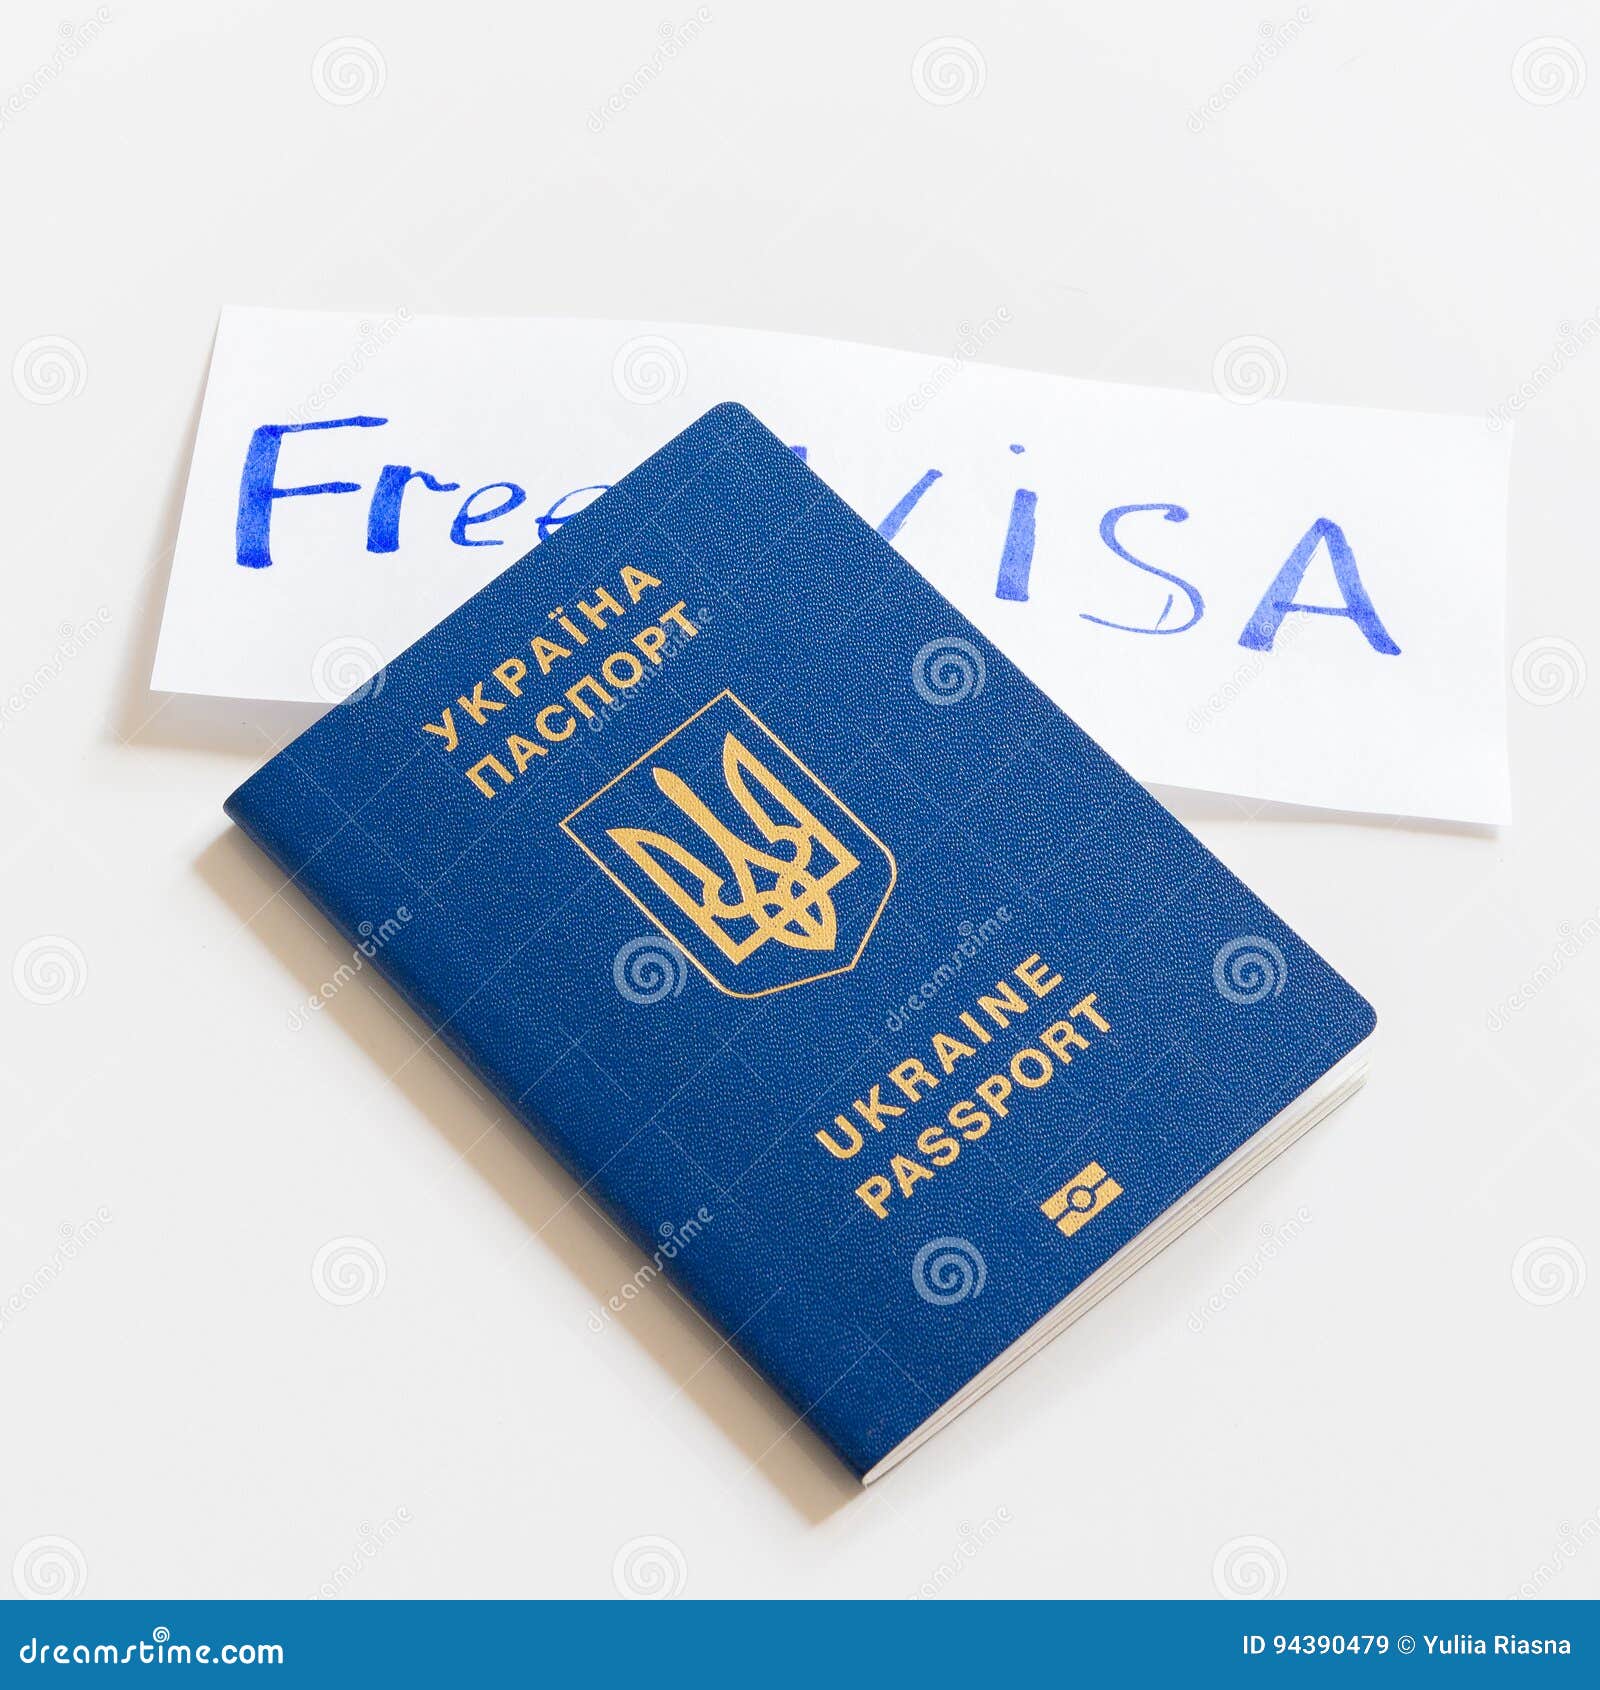 Visa miễn phí là số tiền tiết kiệm tuyệt vời cho chuyến đi du lịch của bạn. Hãy cùng xem hình ảnh và trải nghiệm những ưu đãi đặc biệt mà visa này mang lại. Không còn lo lắng về thủ tục hay chi phí, bạn có thể bắt đầu kế hoạch cho chuyến du lịch mơ ước của mình ngay bây giờ.